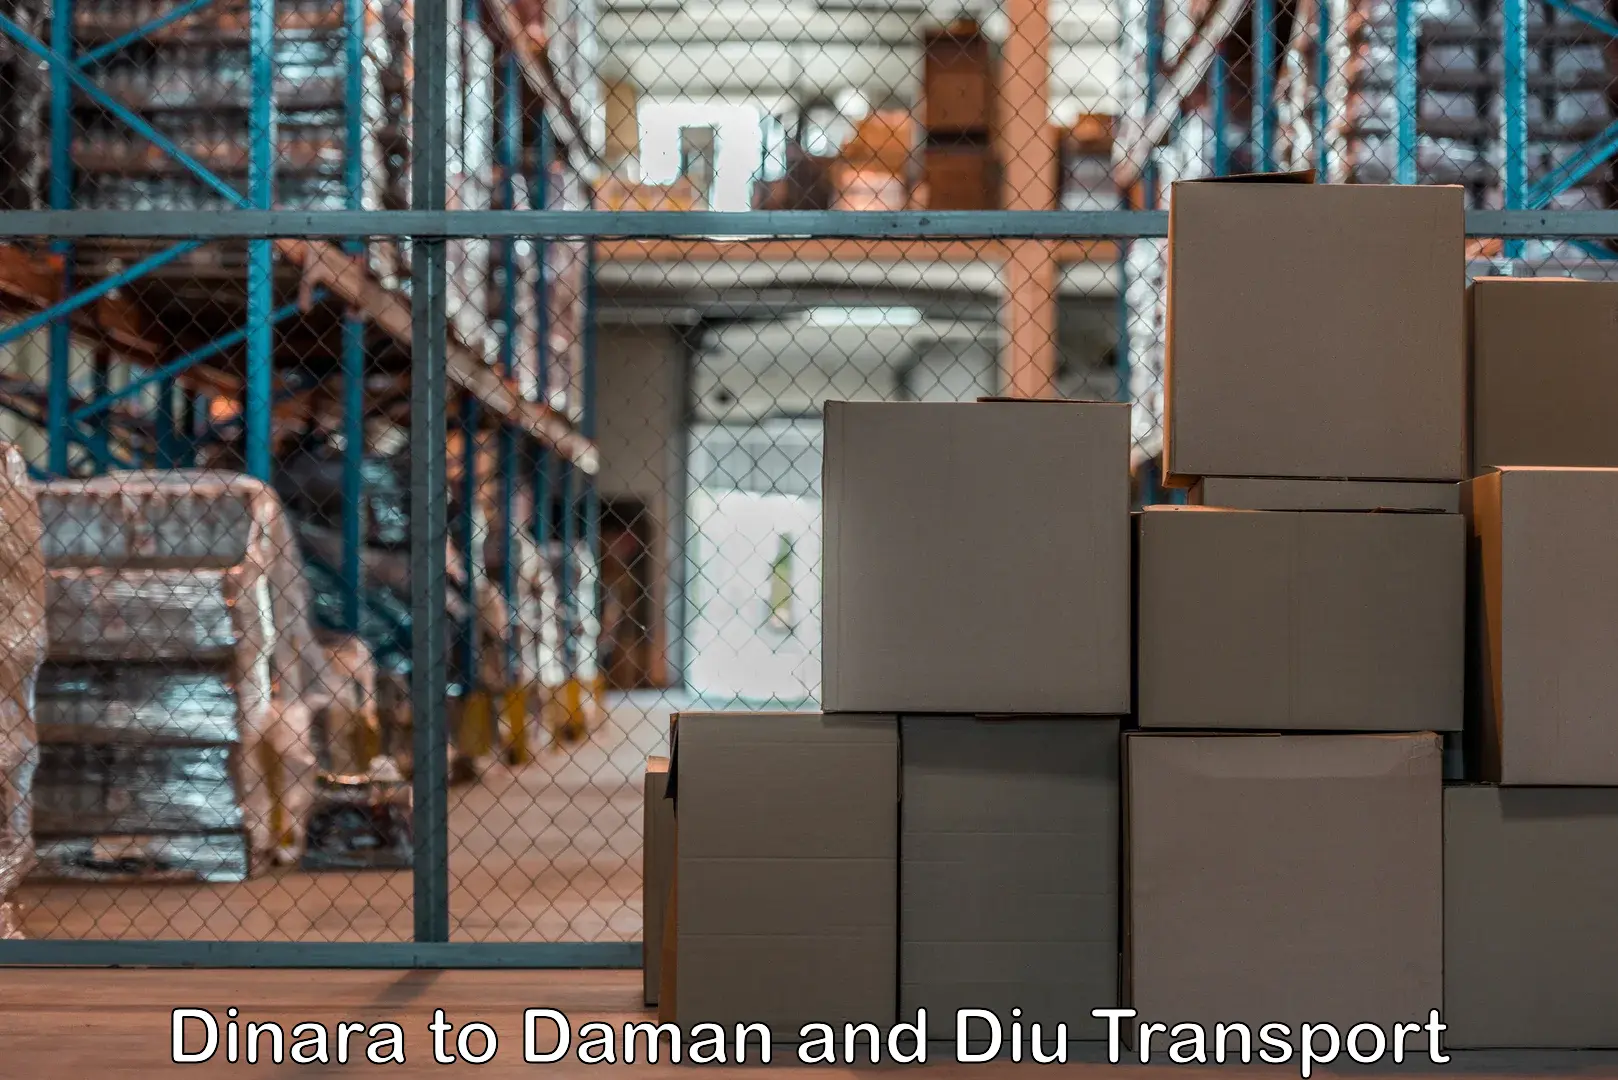 Transport in sharing Dinara to Diu